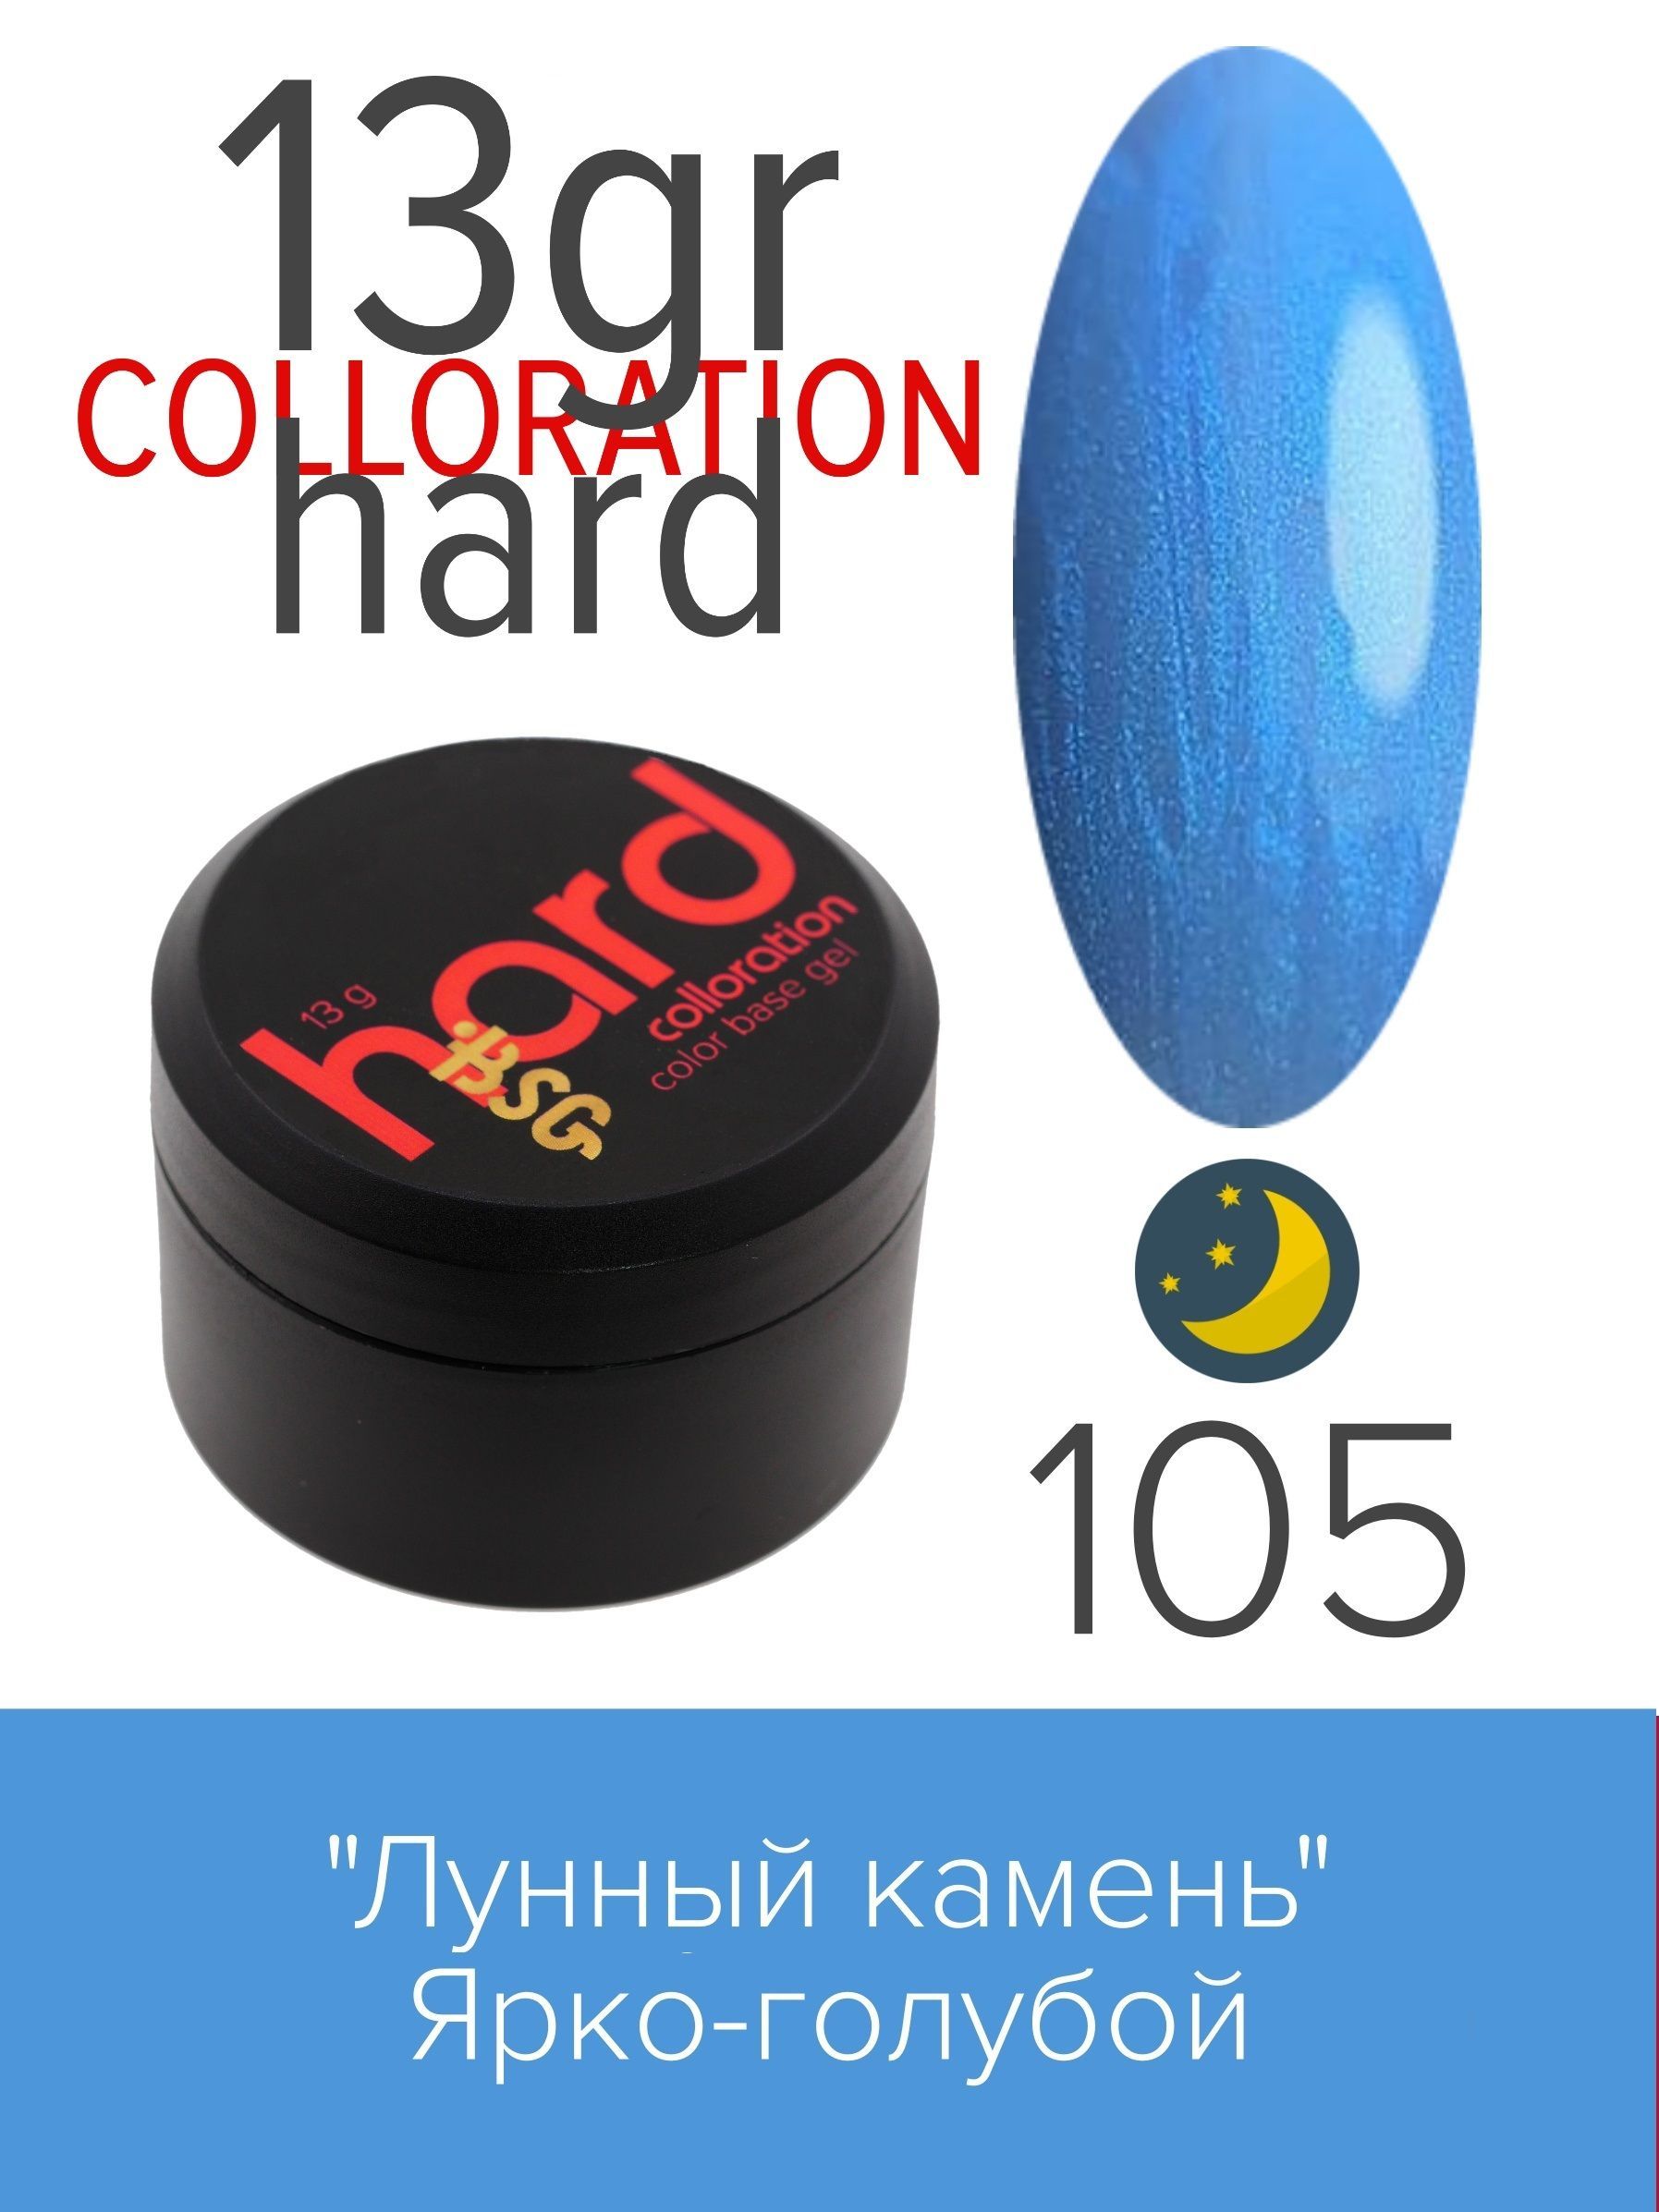 База BSG Colloration Hard цветная жесткая №105 сургуч в гранулах в баночке звёздочки голубой перламутр 16 гр 7х3х3 см